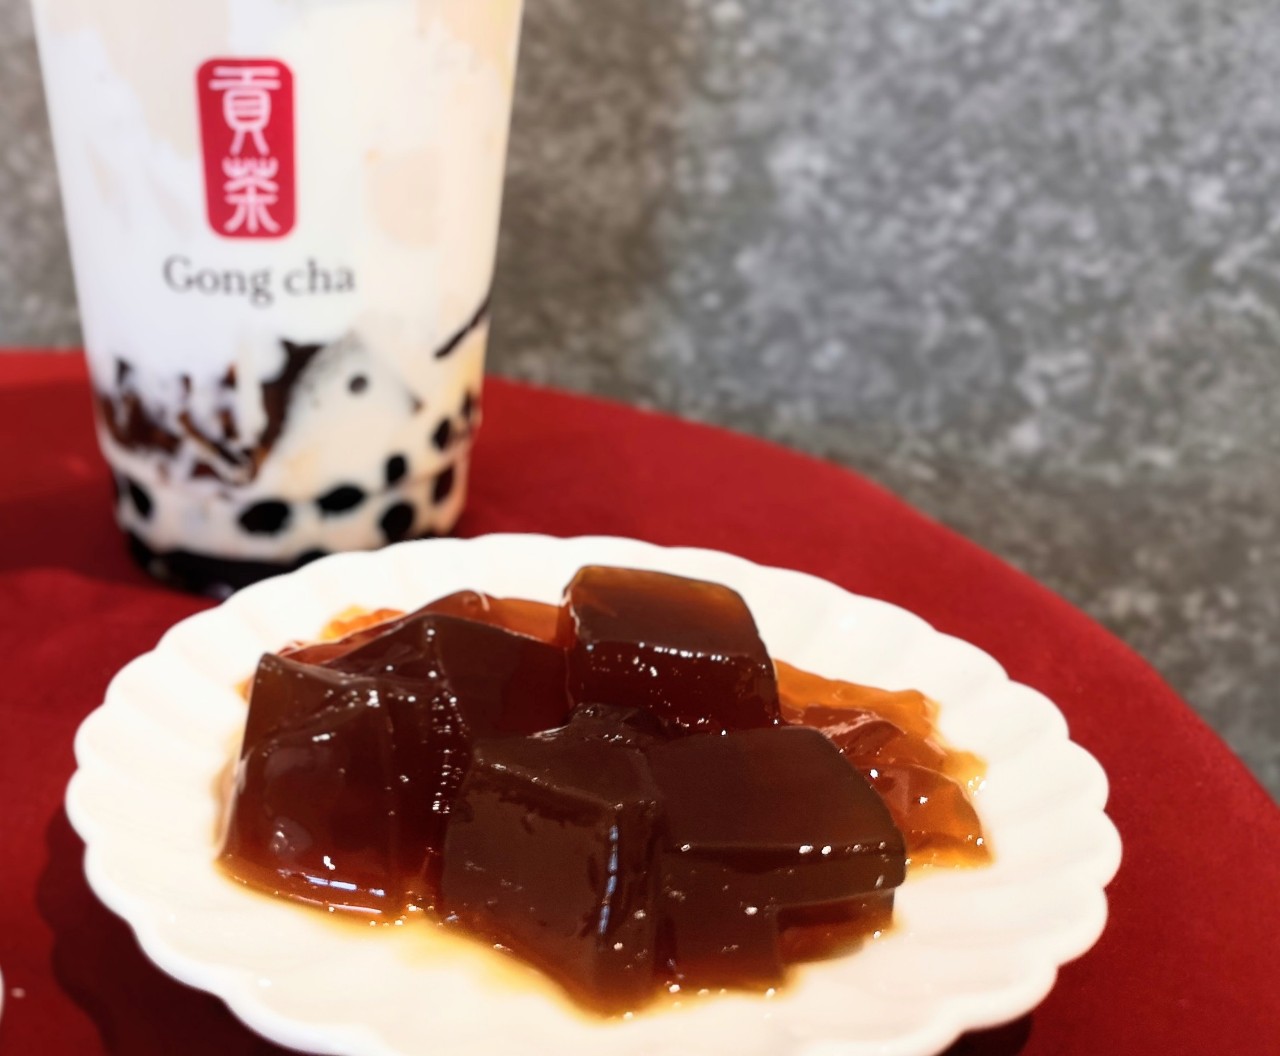 ゴンチャ（Gong cha）「Queen’s Milk Tea」「Queen’s Frozen Tea」特製ブラックティーゼリー